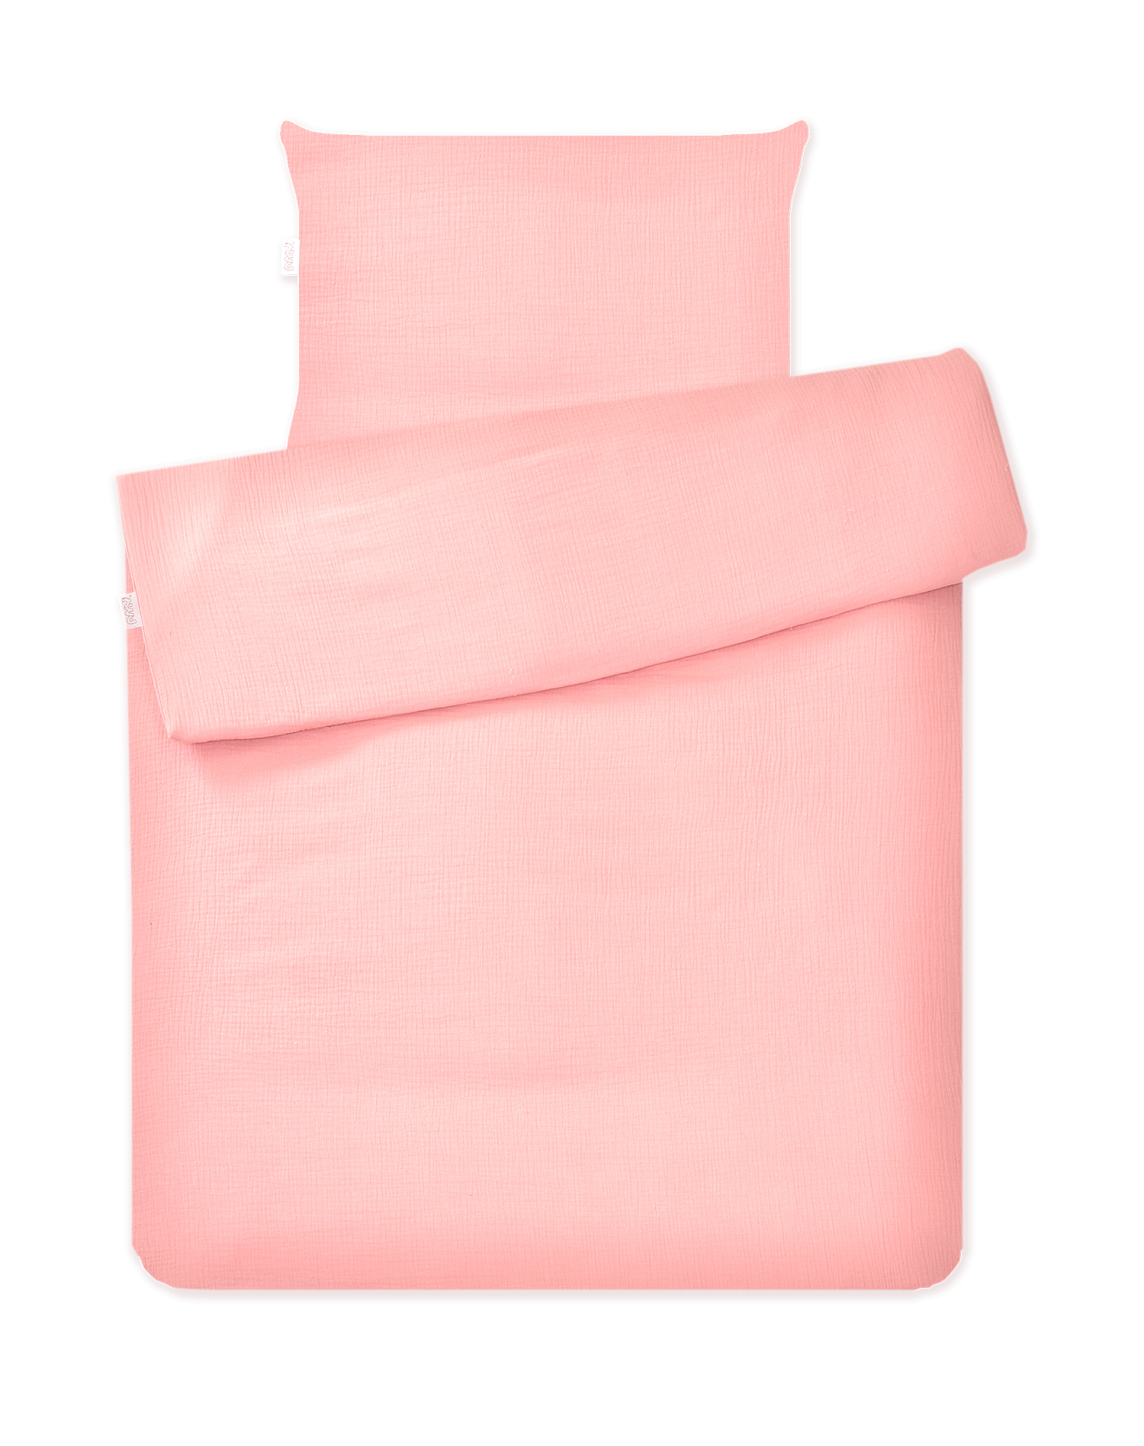 婴儿床床上用品 2 元素艾米拼图平纹细布浅粉红色